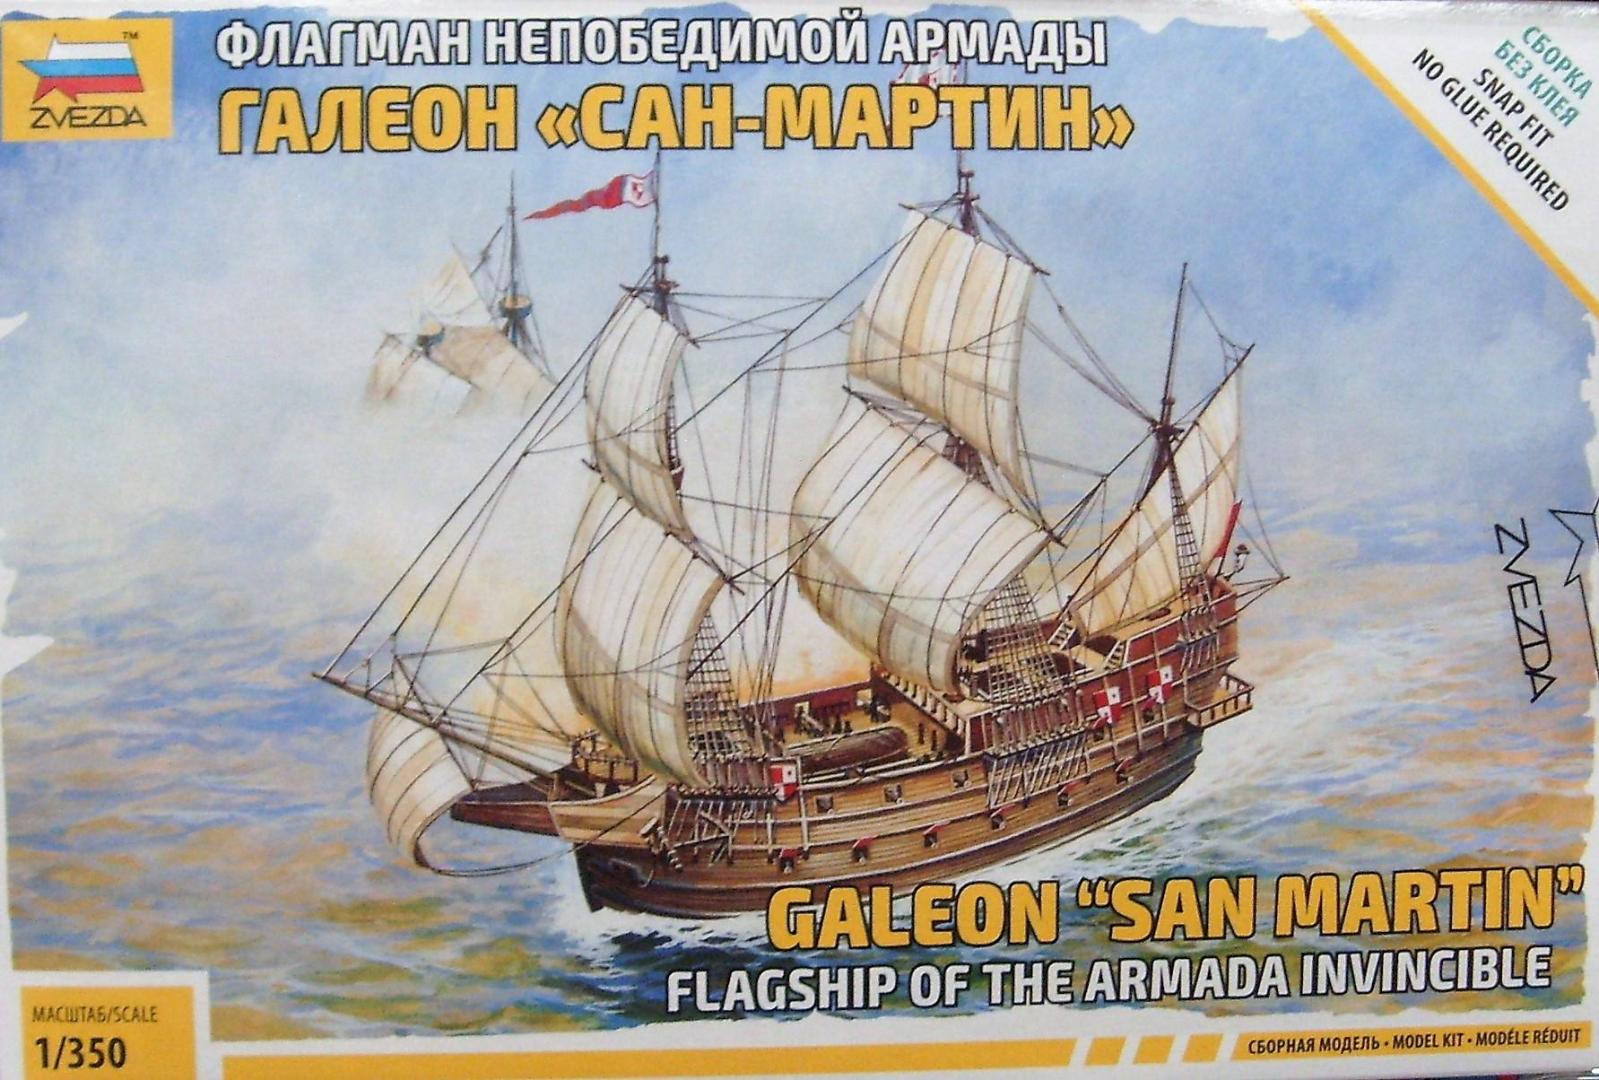 Иллюстрация 22 из 24 для Флагман Непобедимой армады галеон "Сан Мартин" (6502) | Лабиринт - игрушки. Источник: Соловьев  Владимир